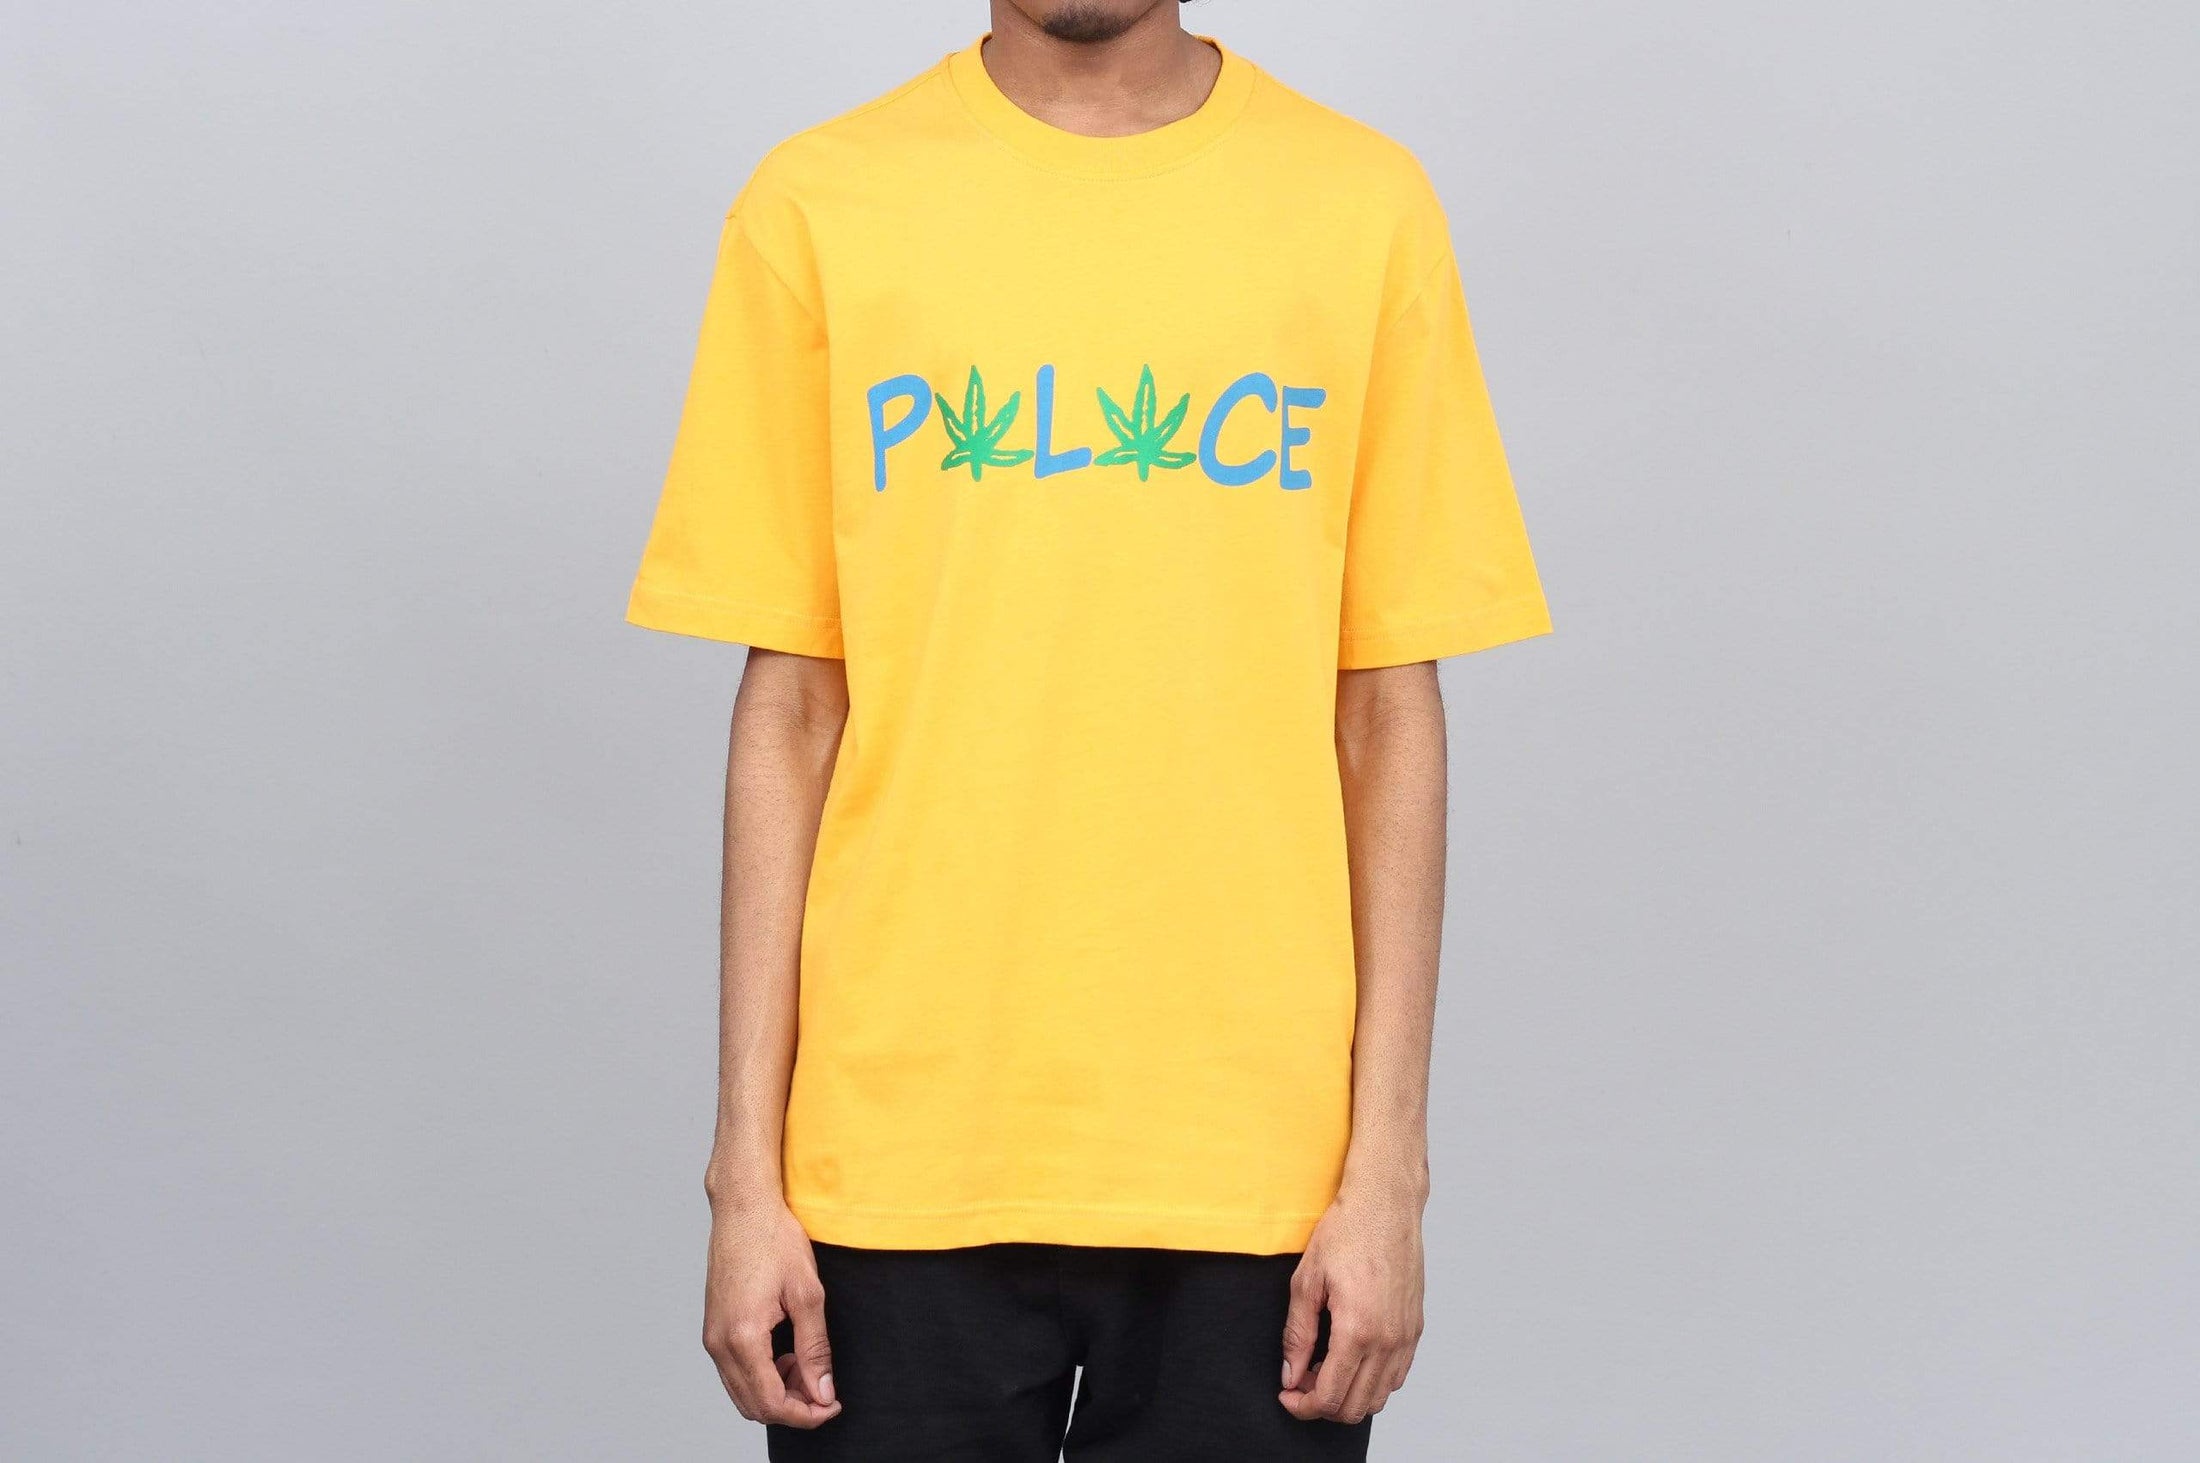 Palace Pwlwce T-Shirt Yellow